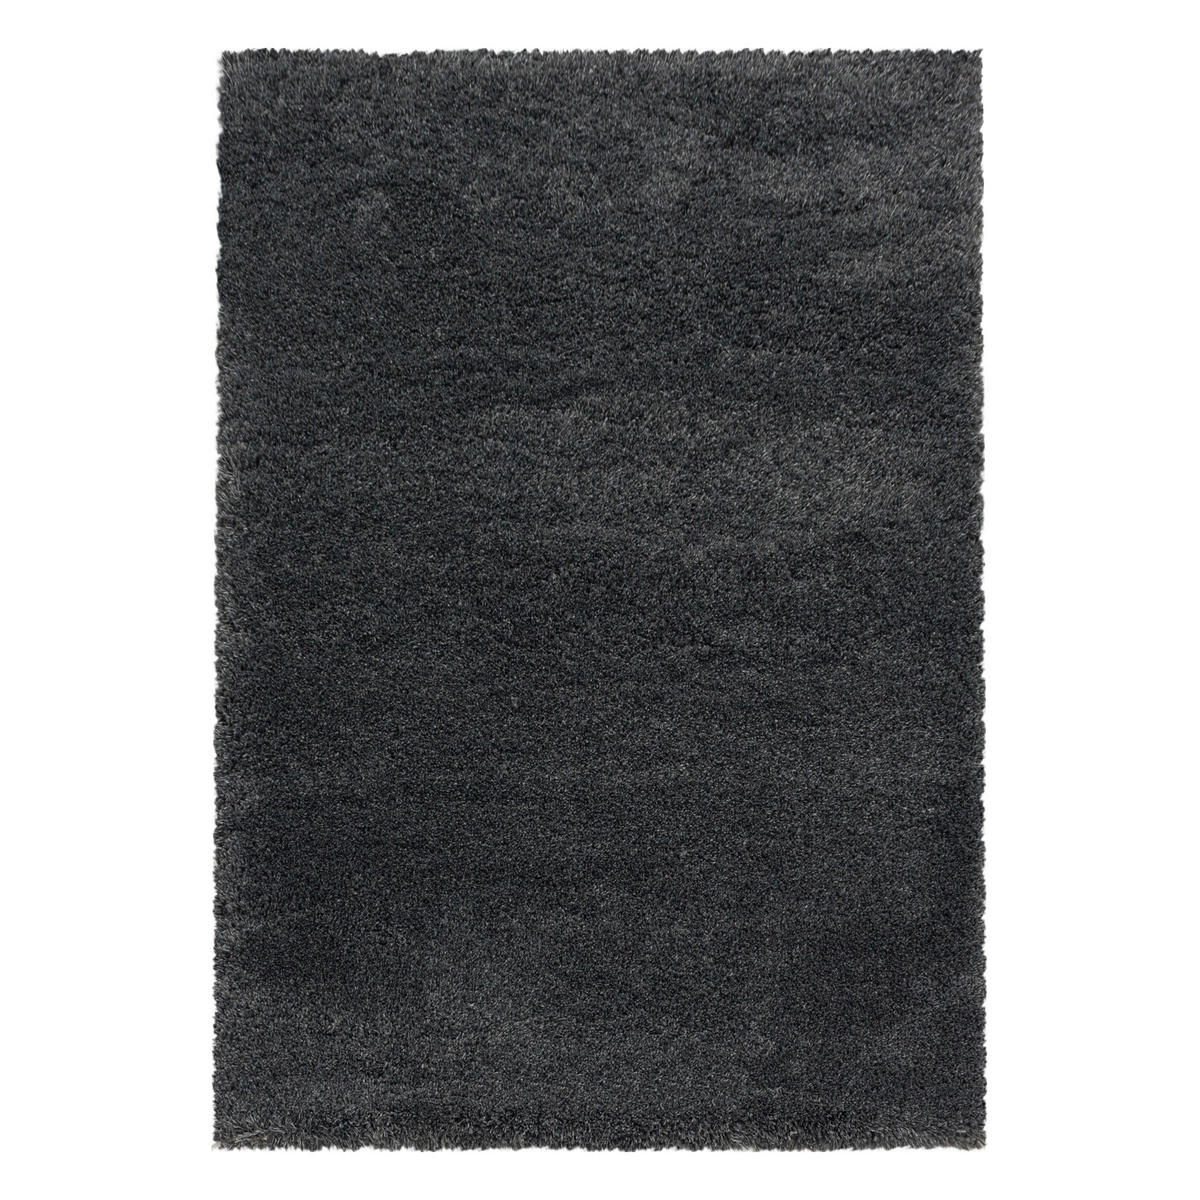 HOCHFLORTEPPICH 280/370 cm Fluffy 3500 Grey  - Grau, Basics, Textil (280/370cm) - Novel